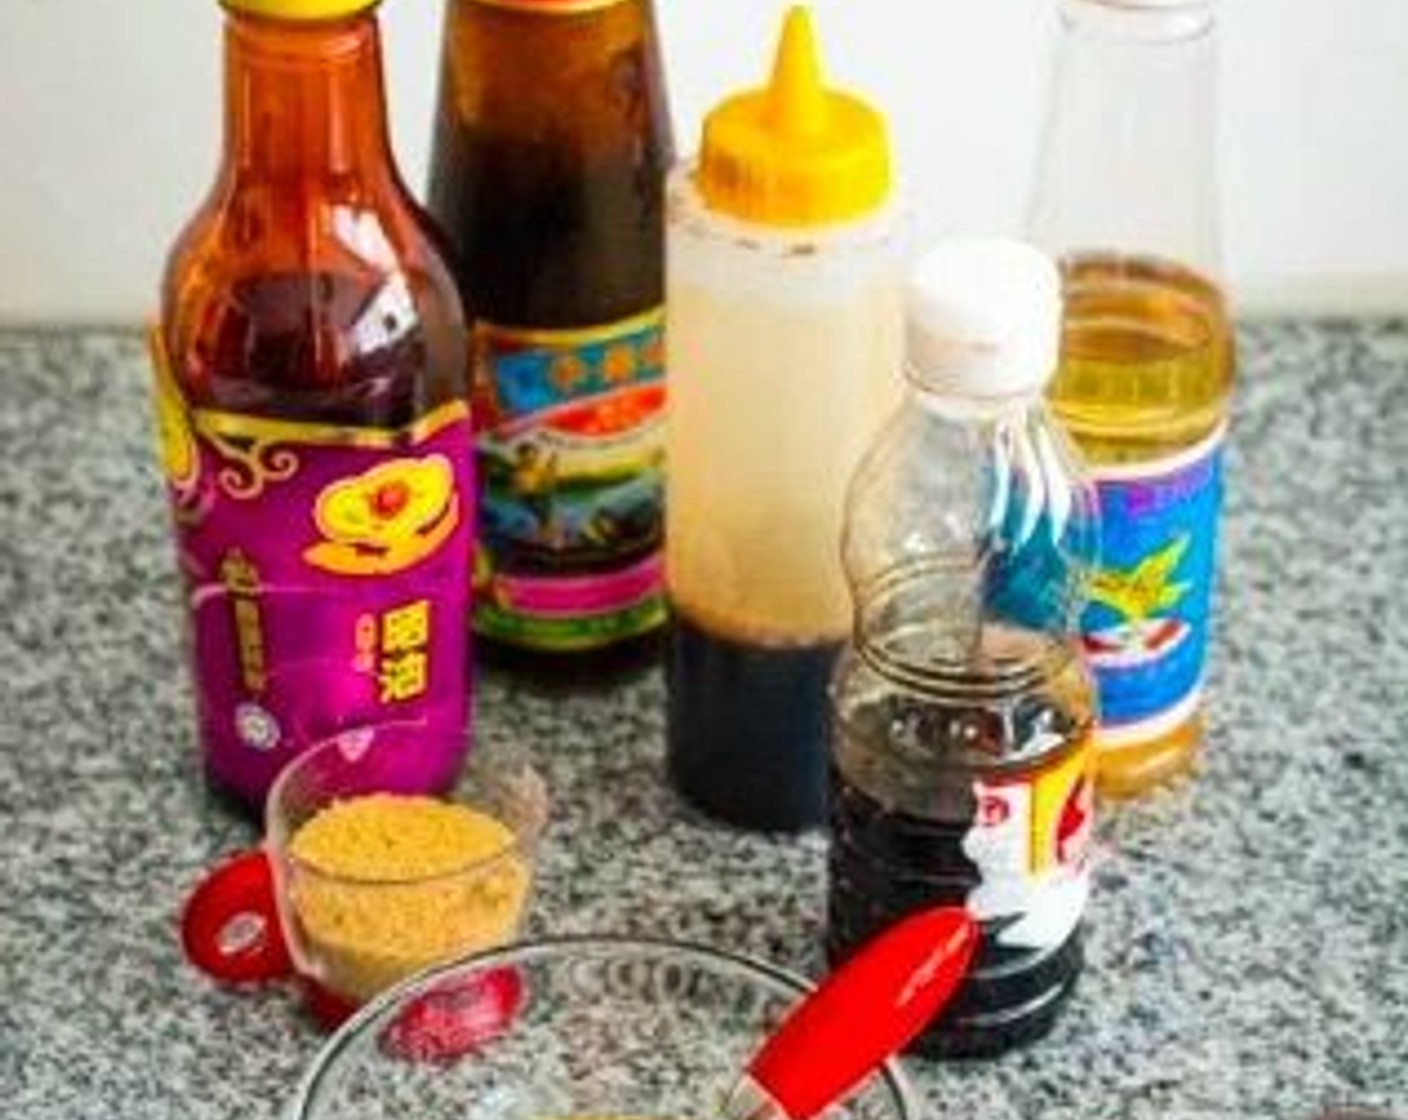 step 1 In a mixing bowl, combine Soy Sauce (1 Tbsp), Oyster Sauce (1 Tbsp), Rice Vinegar (1 Tbsp), Fish Sauce (1/2 Tbsp), Dark Soy Sauce (1 tsp), and Brown Sugar (1/2 Tbsp).